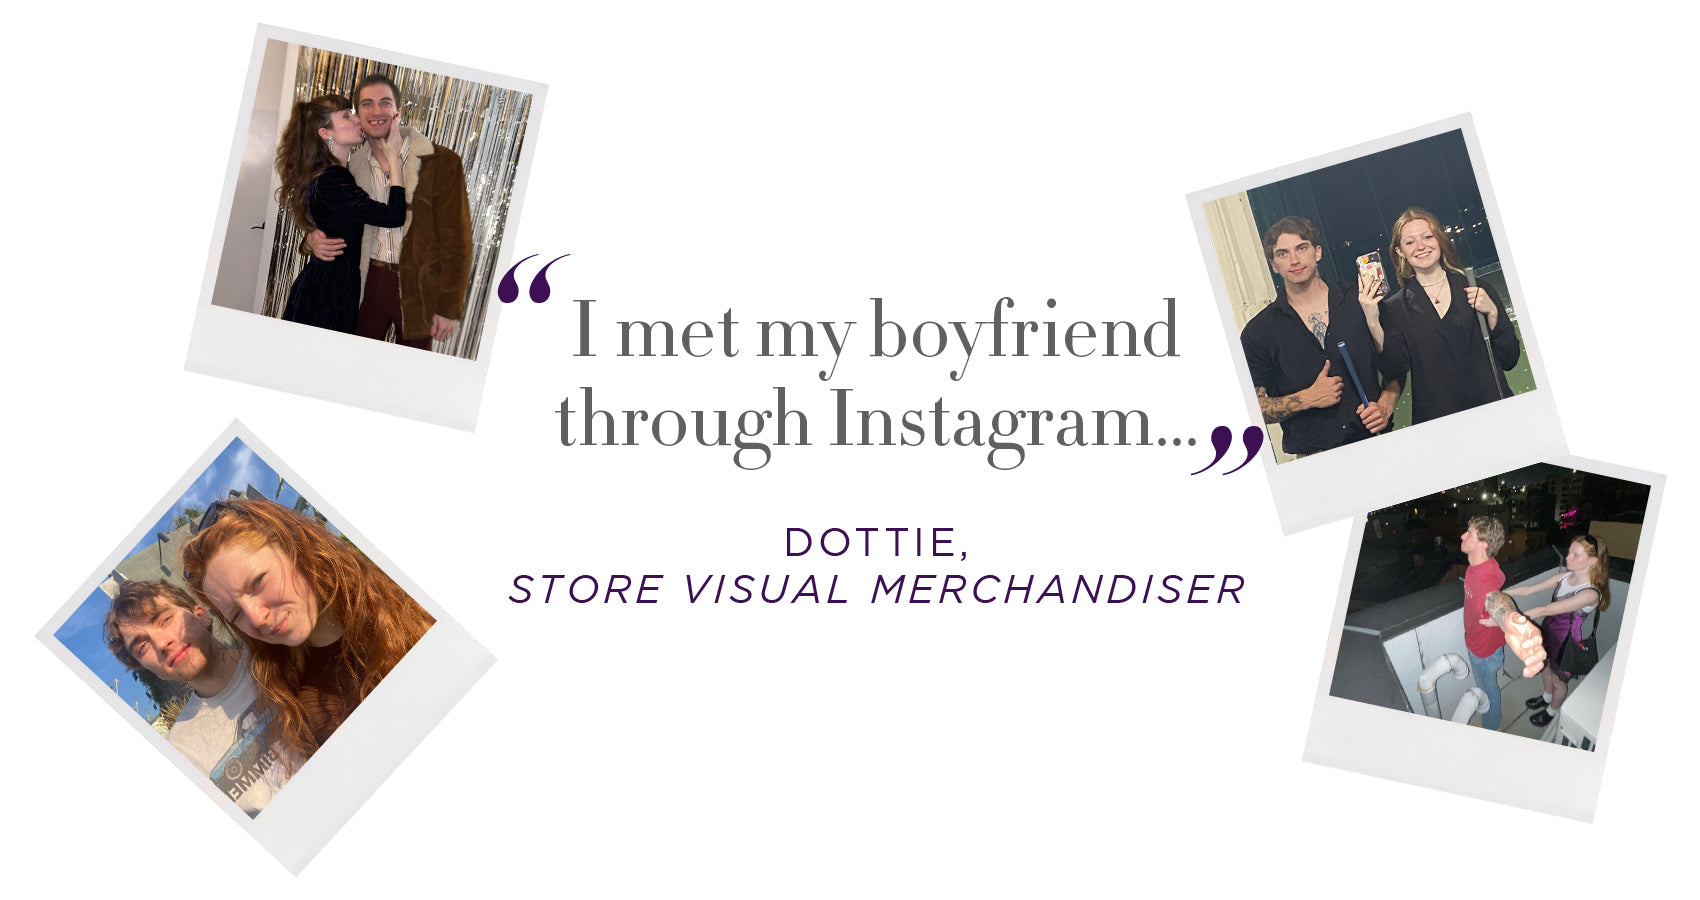 Our Visual Store Merchandiser, Dottie, with her boyfriend